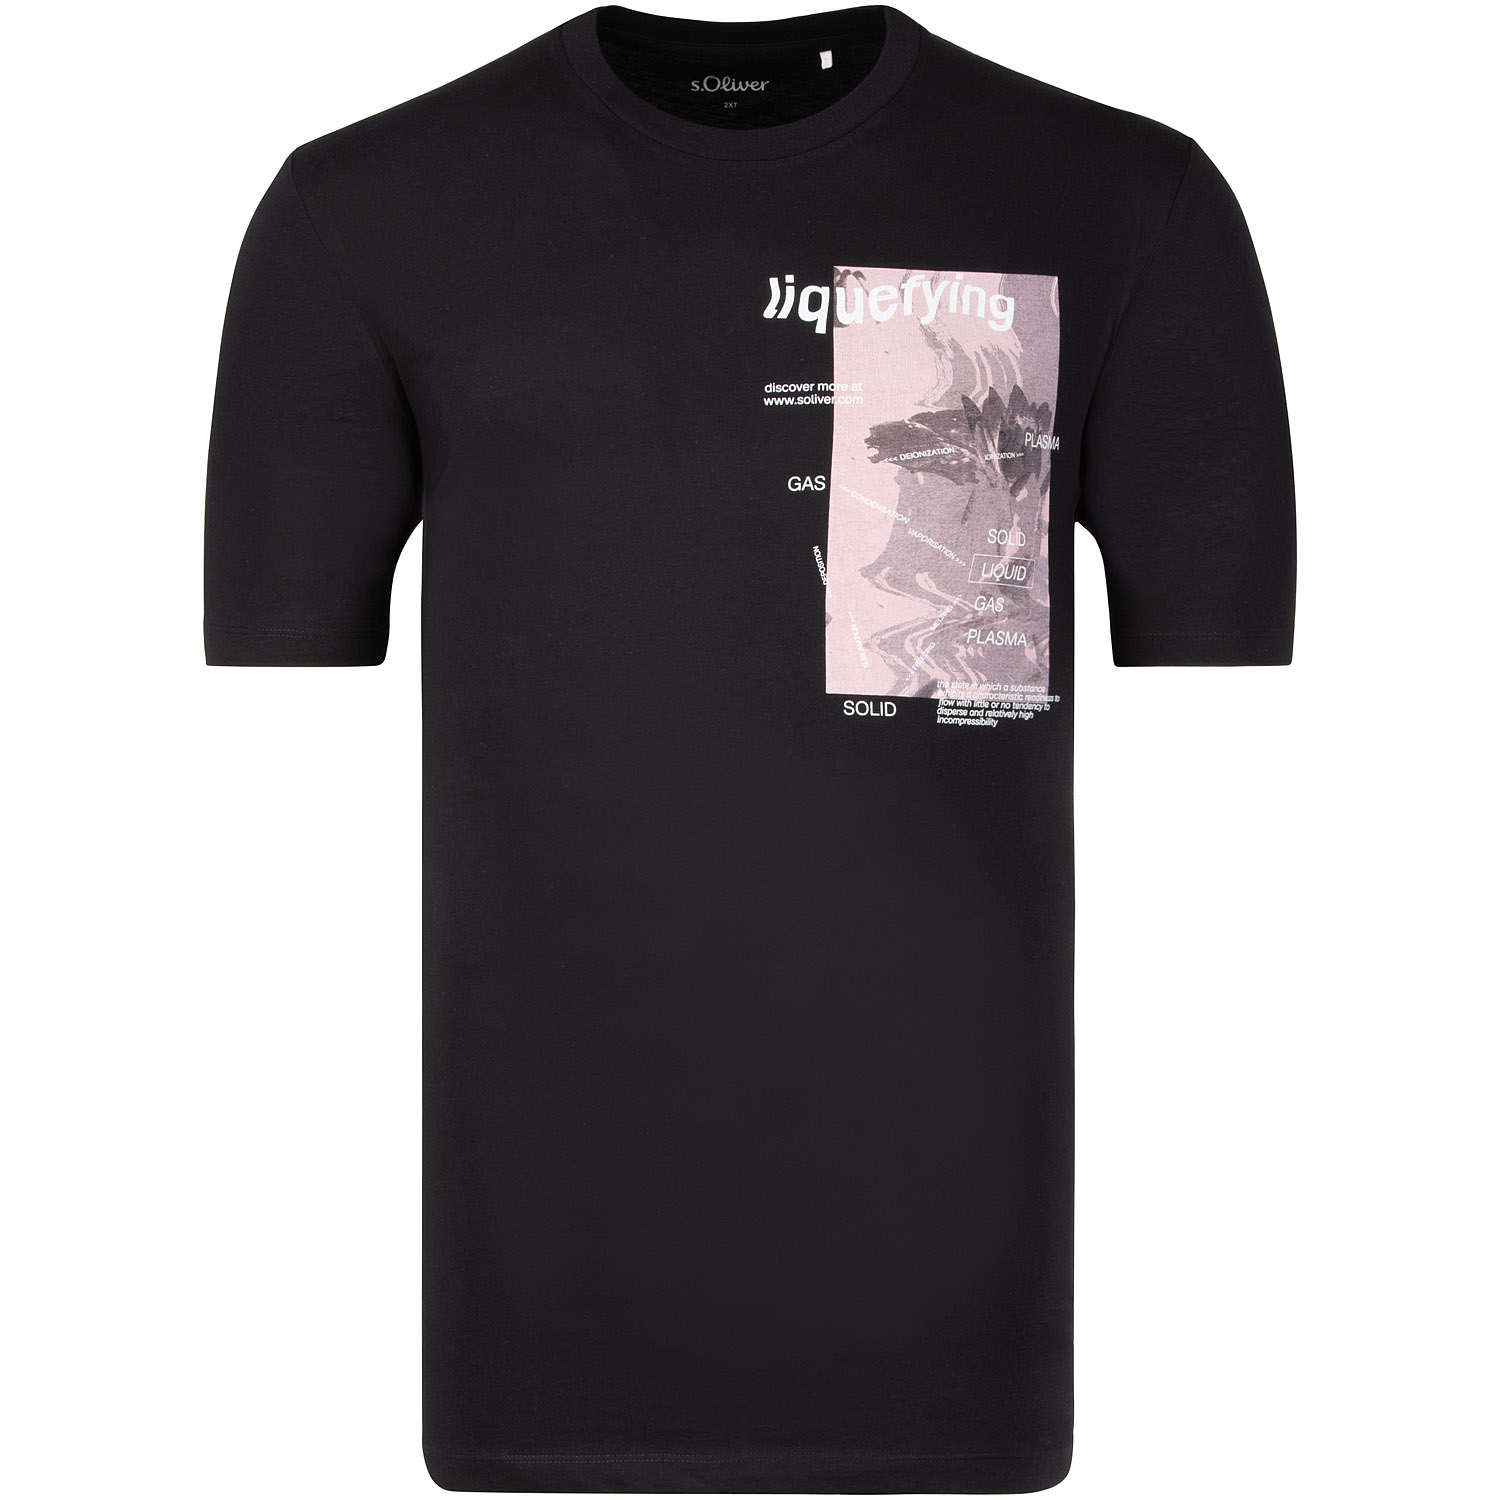 S.OLIVER T-Shirt - EXTRA lang schwarz Herrenmode in Übergrößen kaufen